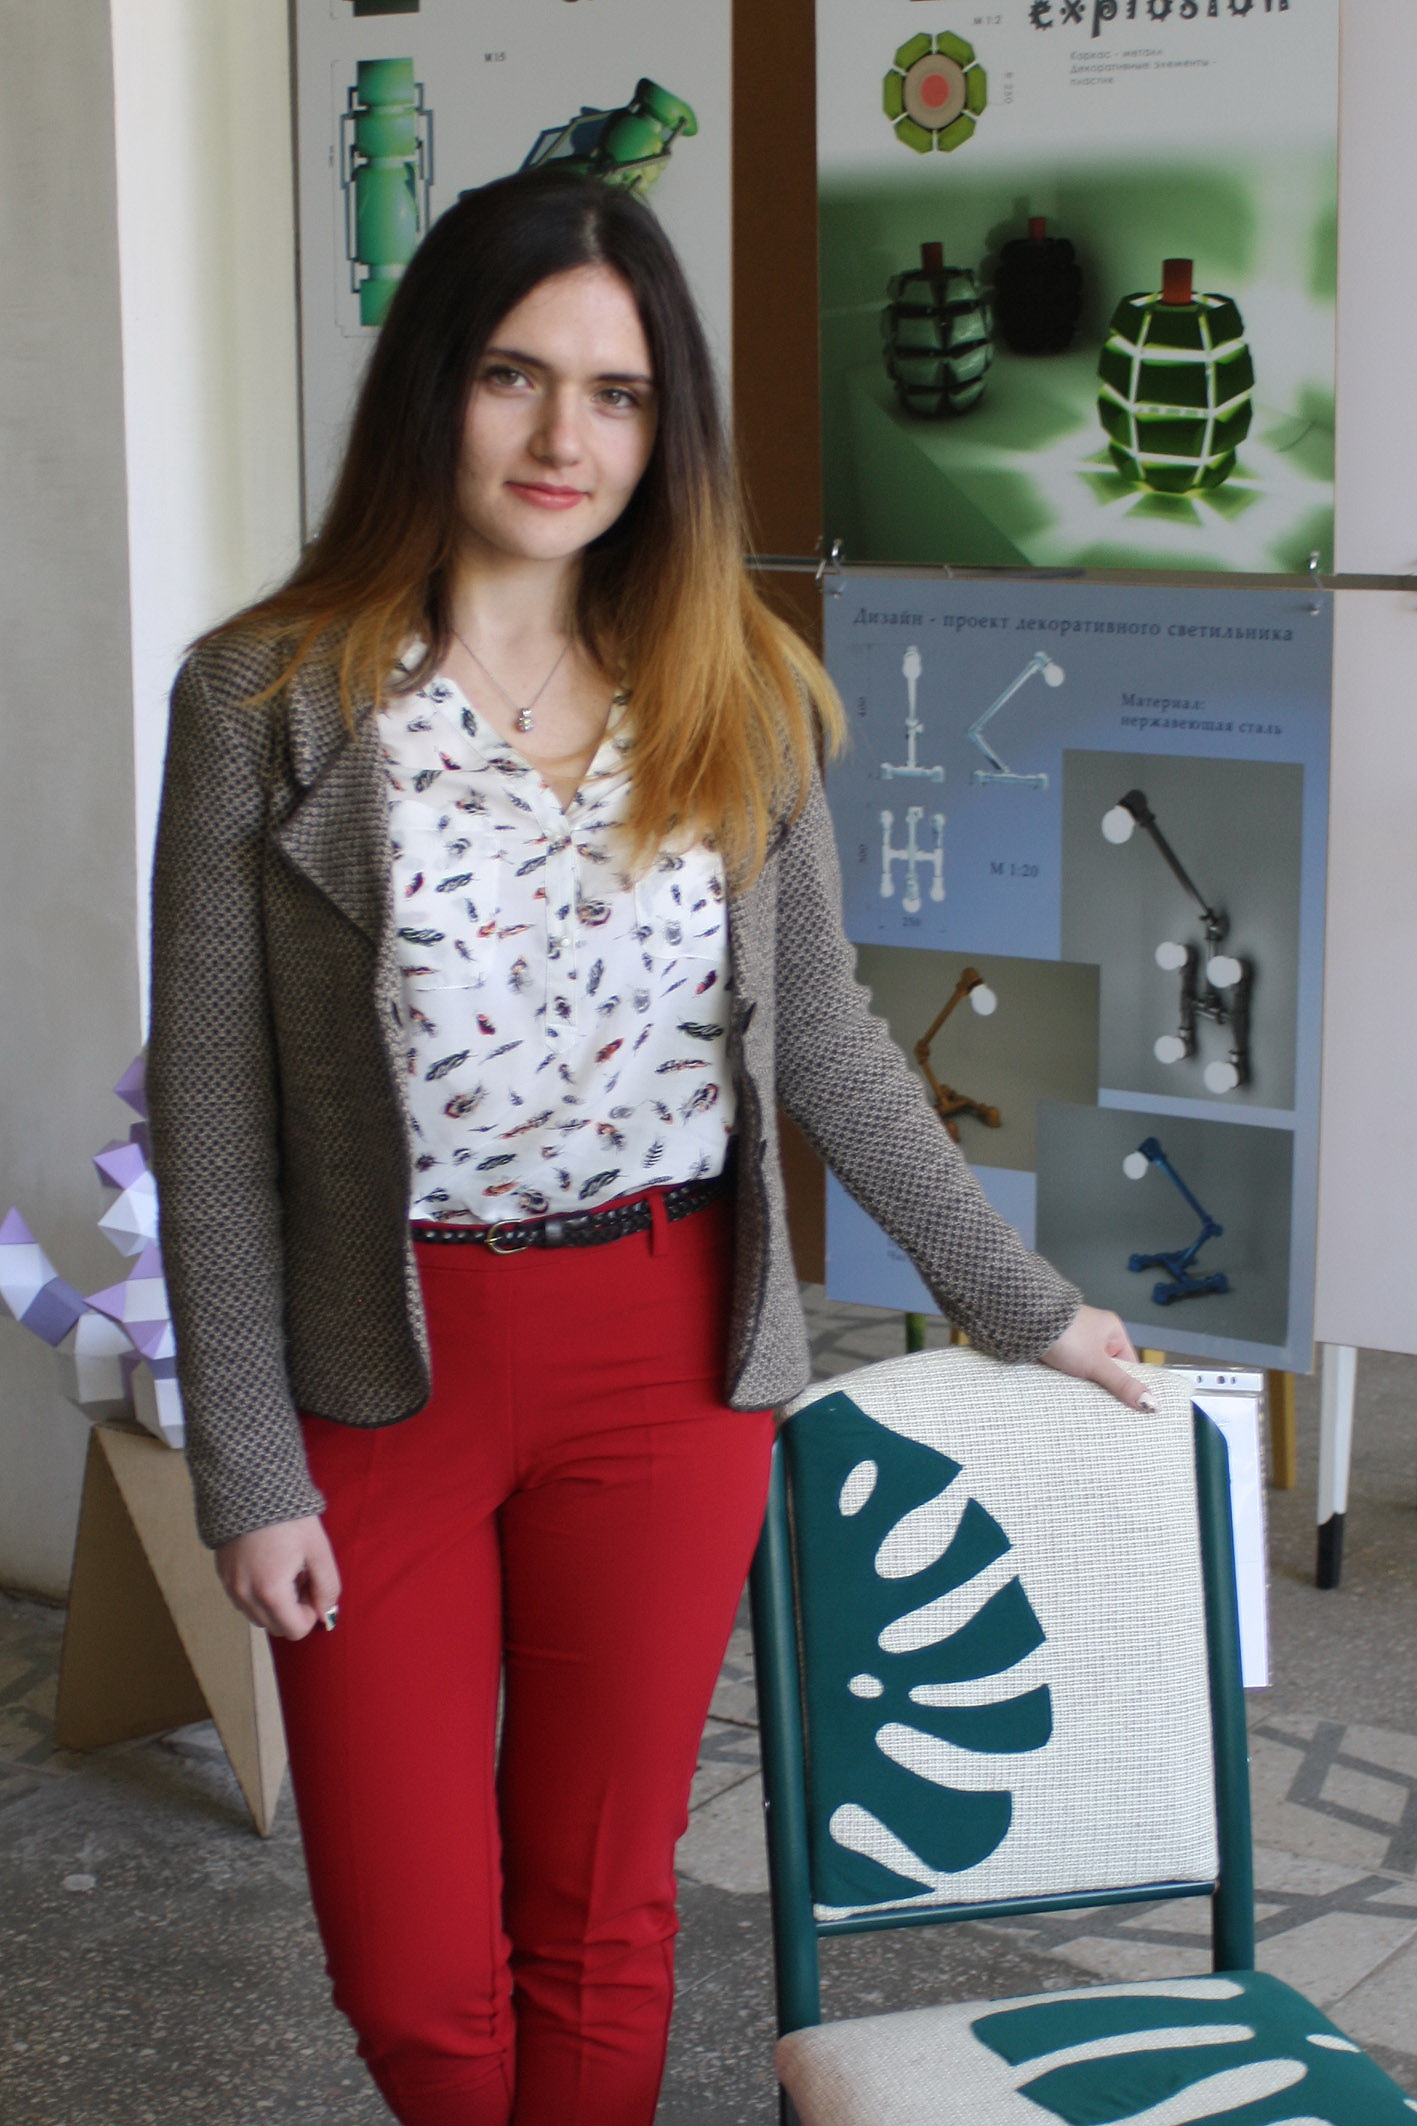 Ганна Сиромятнікова стала найкращим дизайнером серед студентів. Фото автора